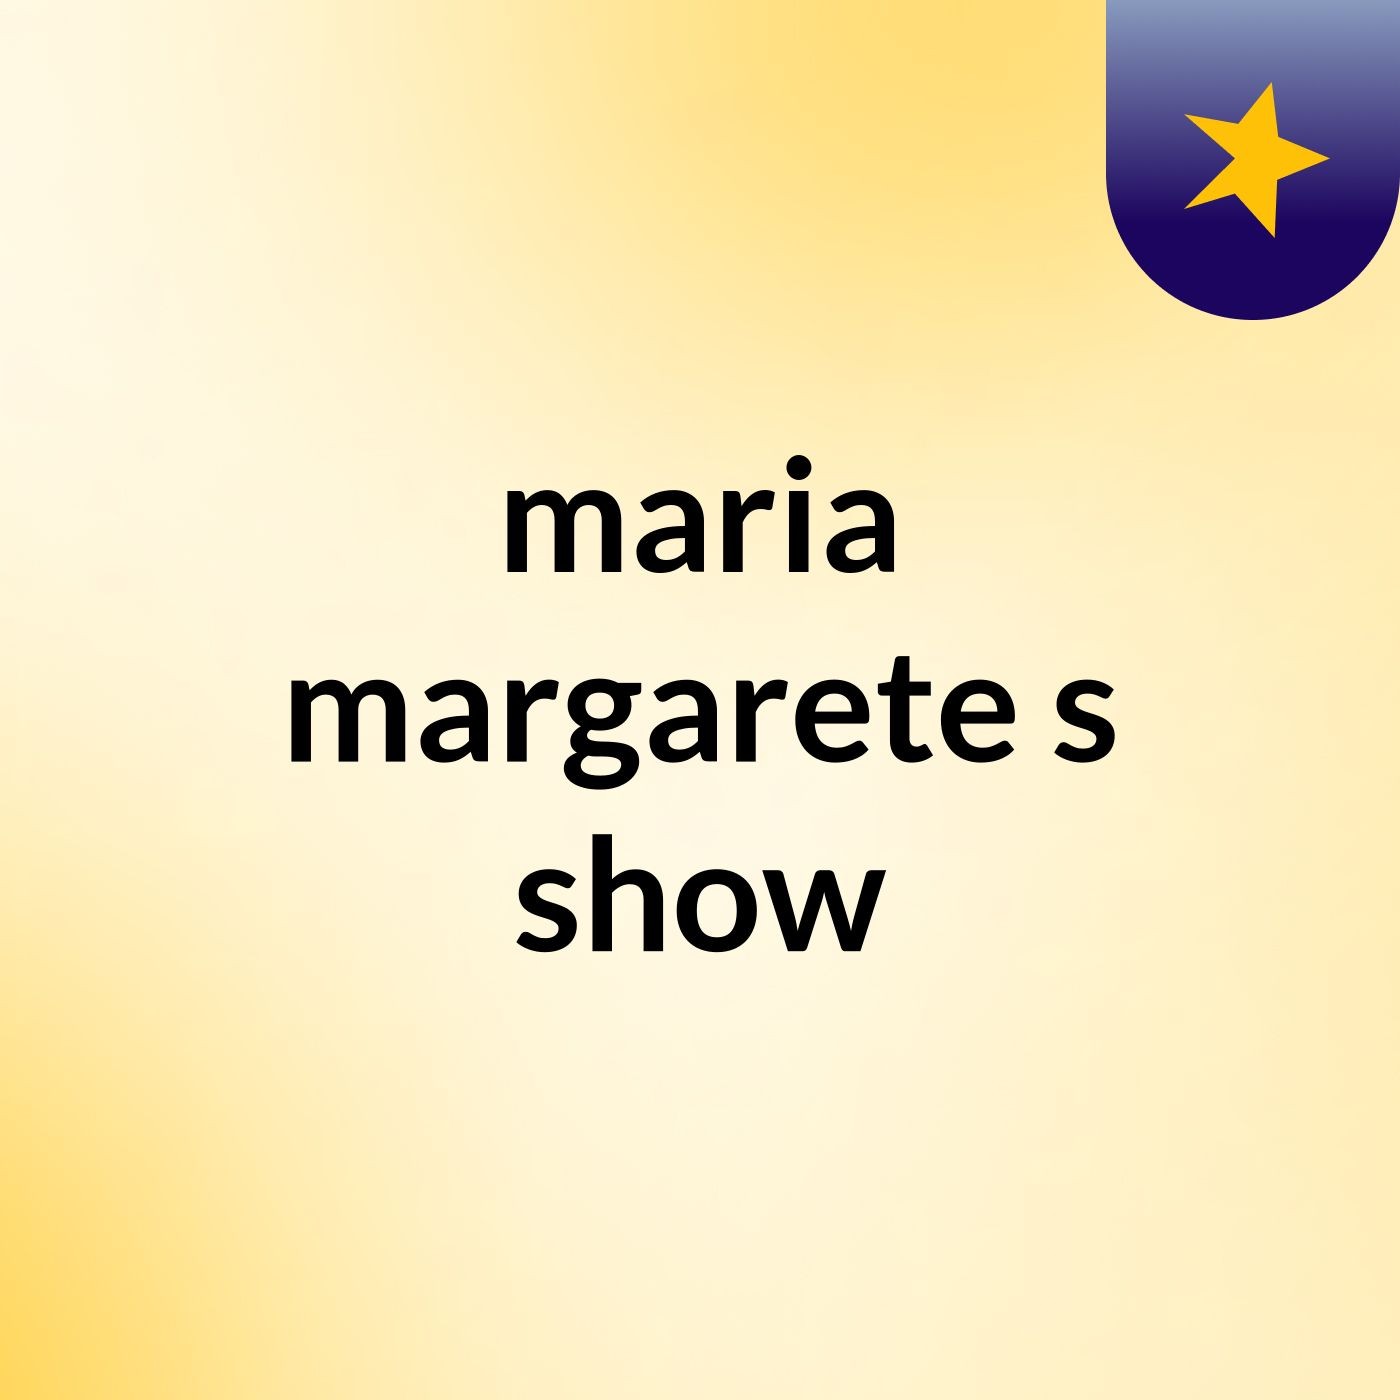 maria margarete's show